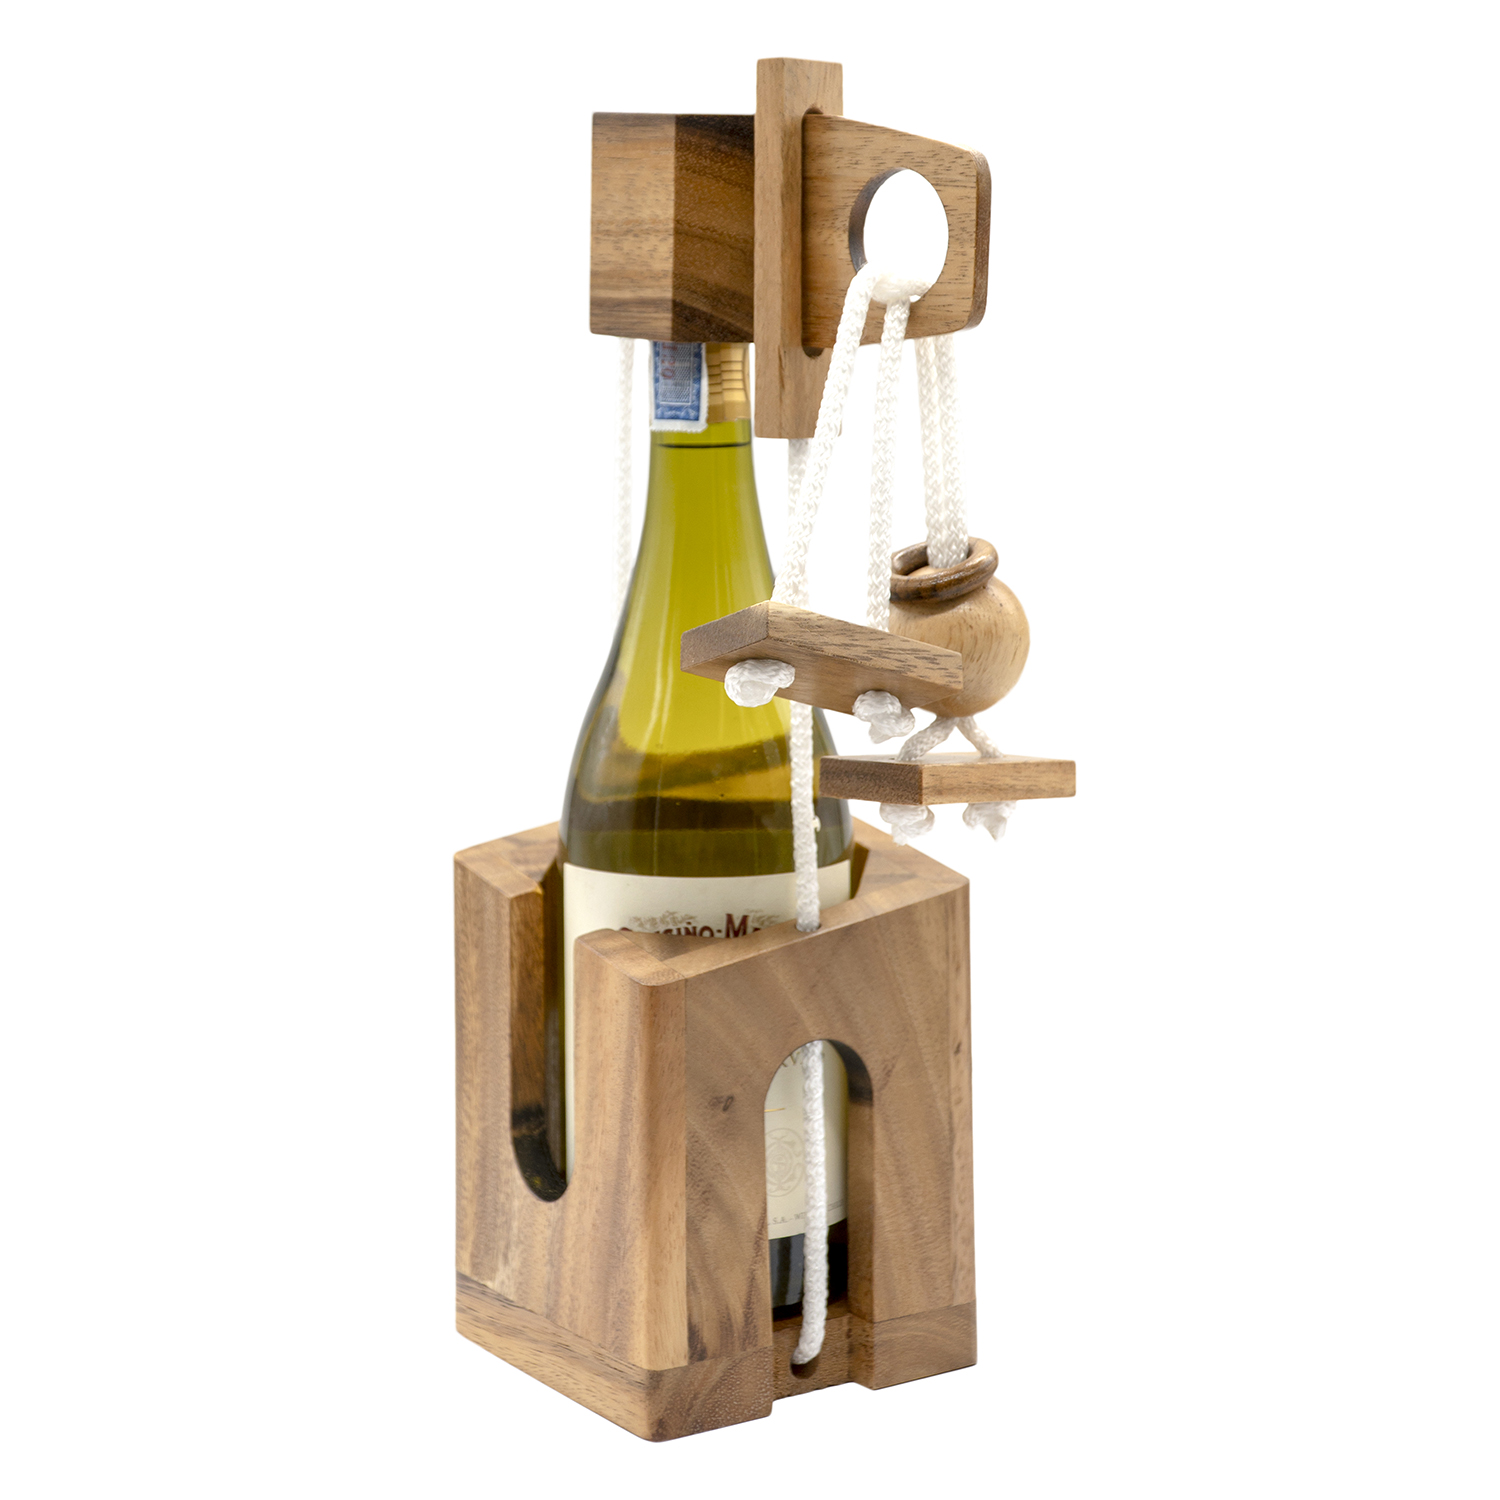 wooden wine bottle puzzle